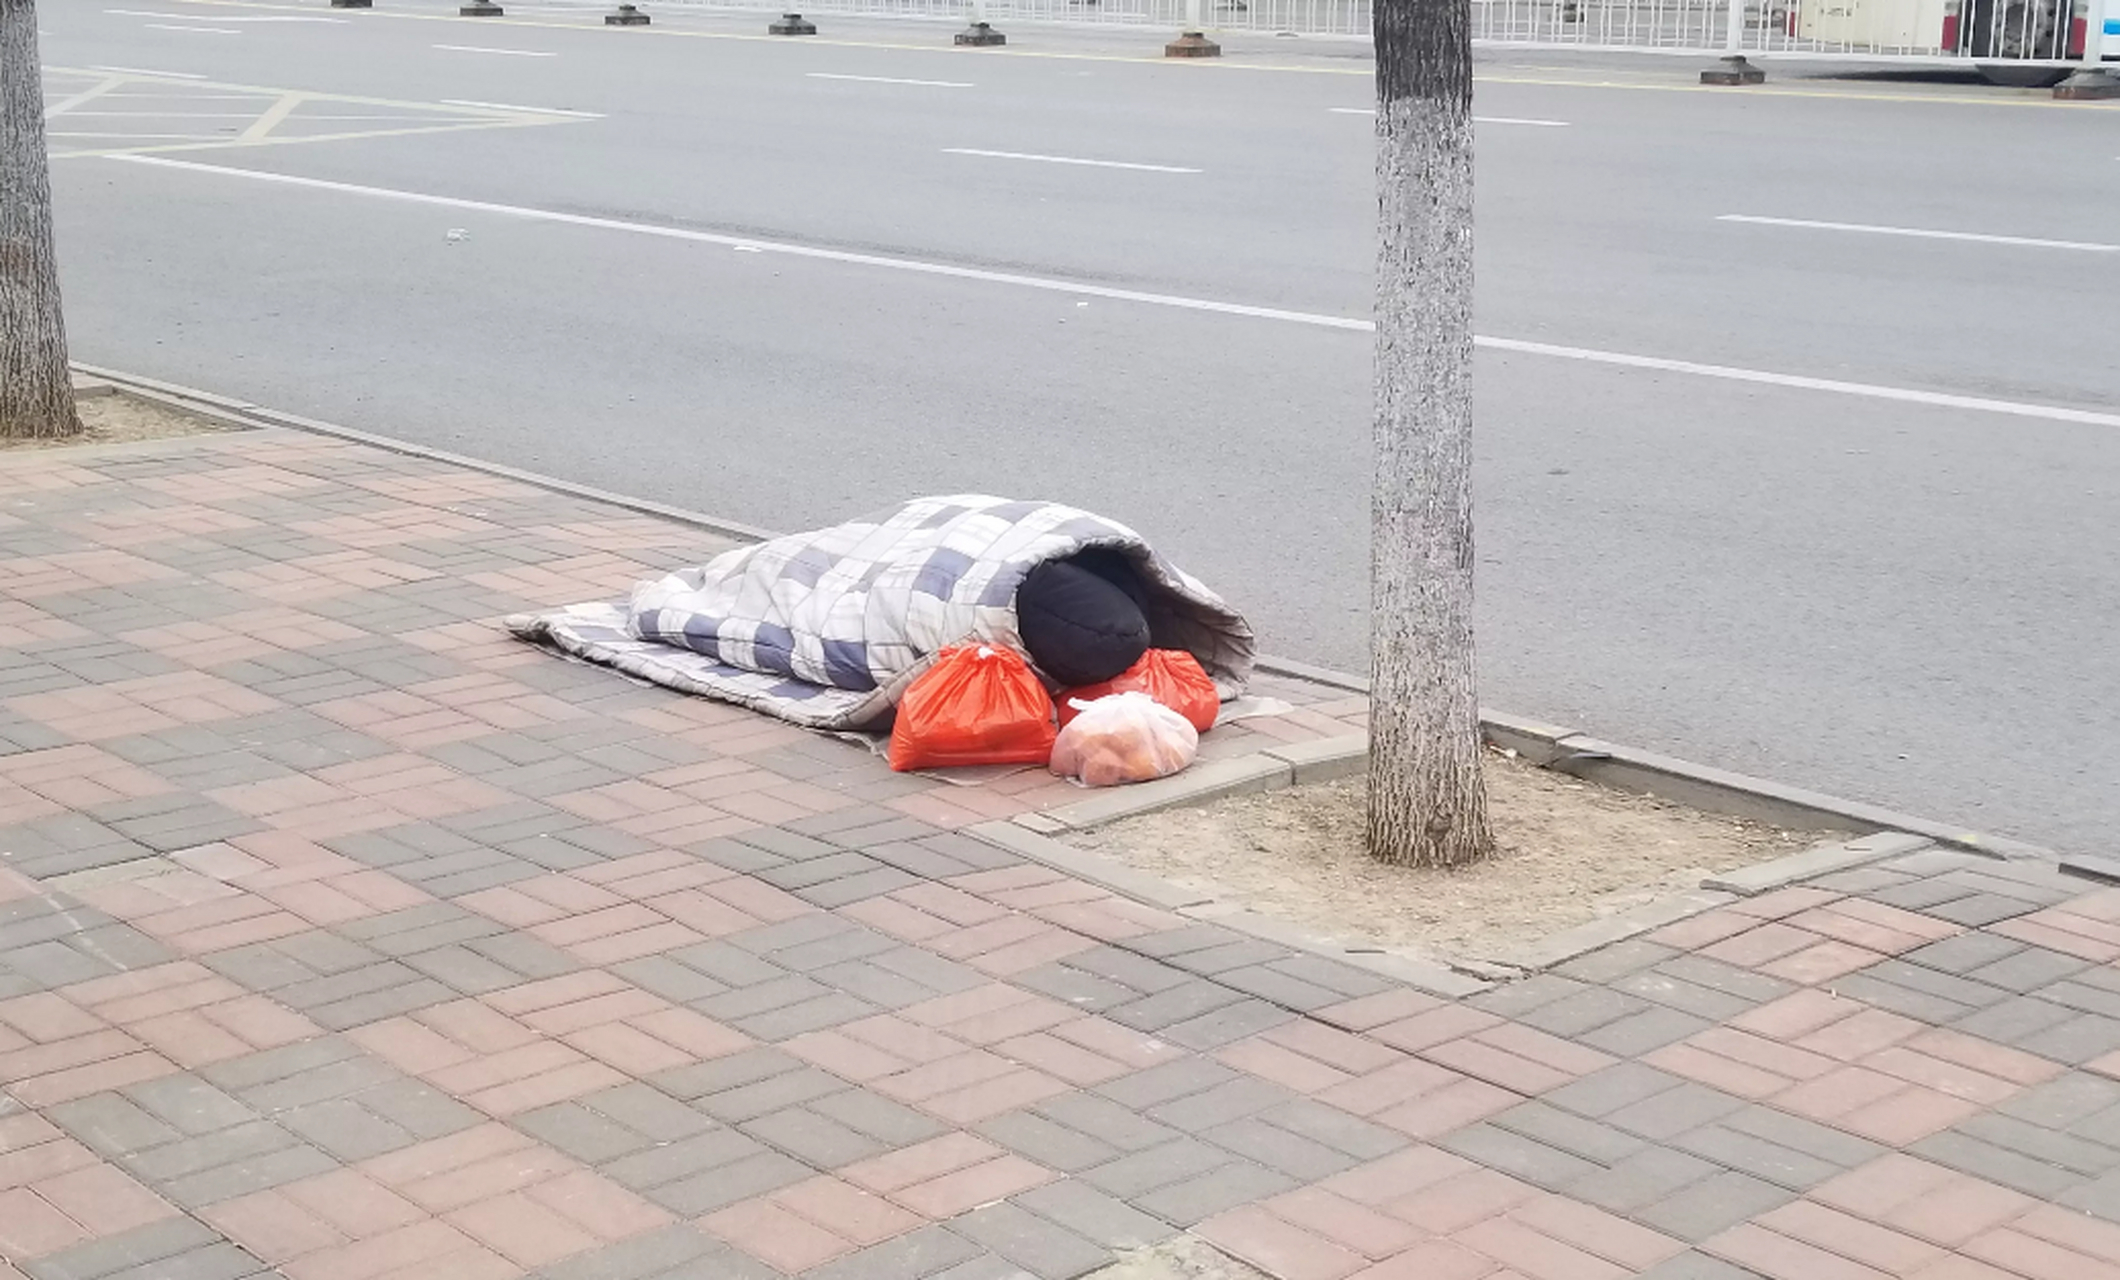 早晨上班在天塔附近看见一个睡在大街上的人,地上铺着被褥,穿着黑棉袄